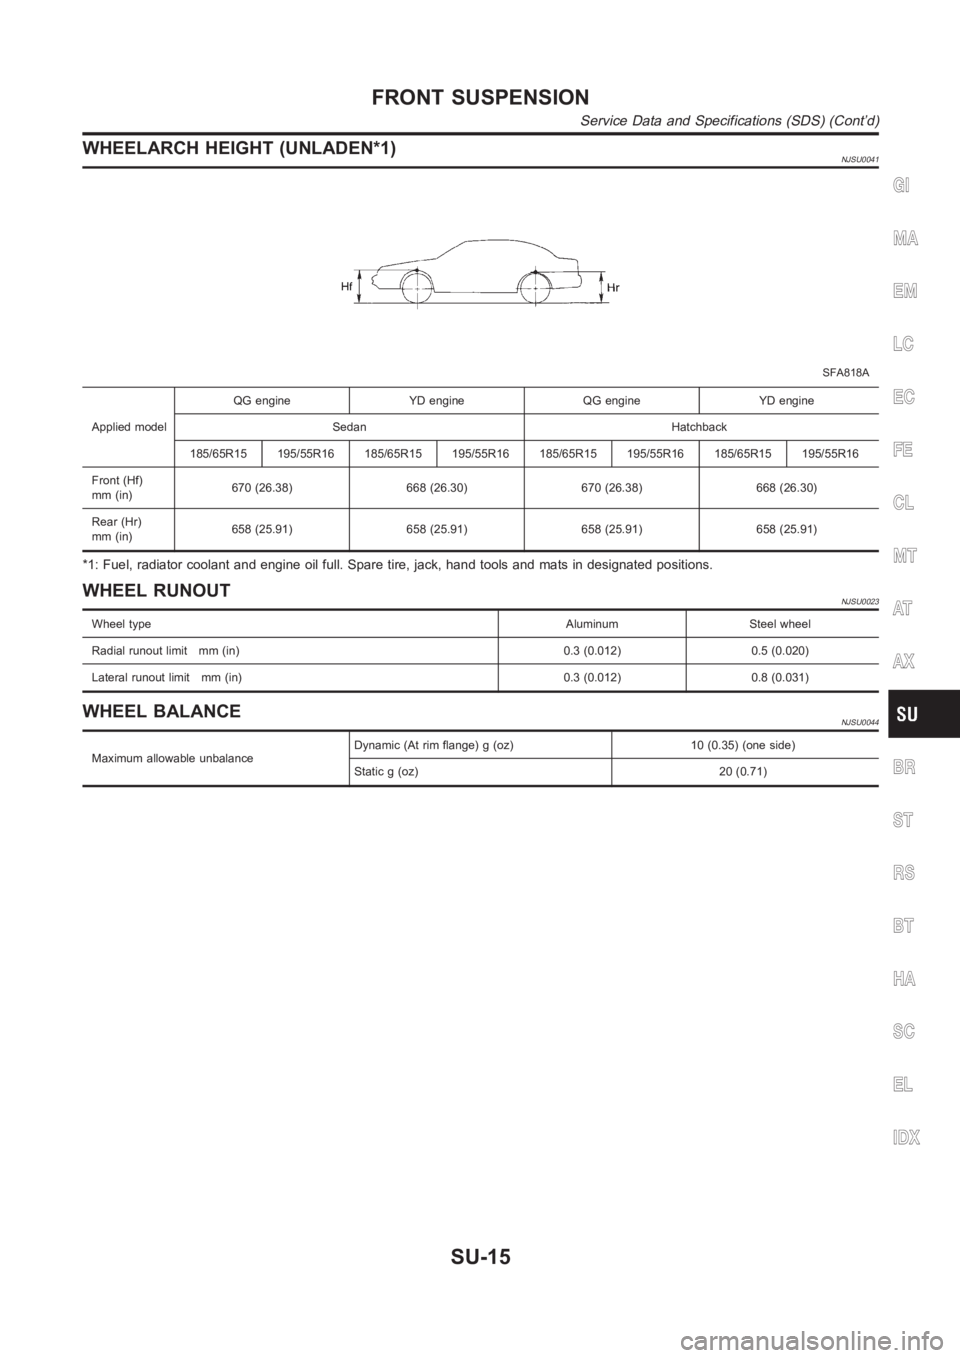 NISSAN ALMERA N16 2003  Electronic Repair Manual WHEELARCH HEIGHT (UNLADEN*1)NJSU0041
SFA818A
Applied modelQG engine YD engine QG engine YD engine
Sedan Hatchback
185/65R15 195/55R16 185/65R15 195/55R16 185/65R15 195/55R16 185/65R15195/55R16
Front (